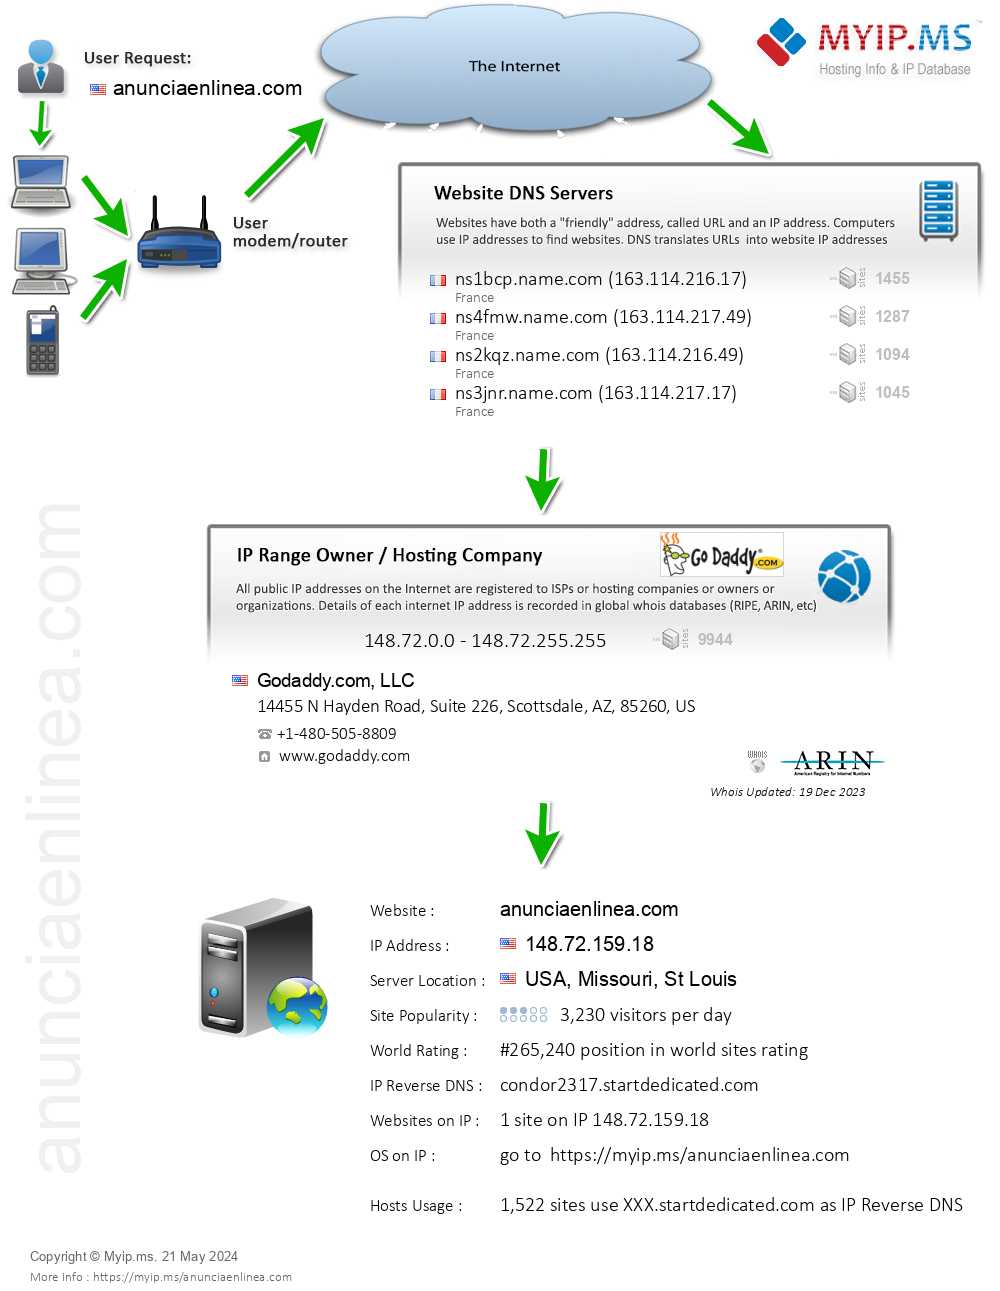 Anunciaenlinea.com - Website Hosting Visual IP Diagram